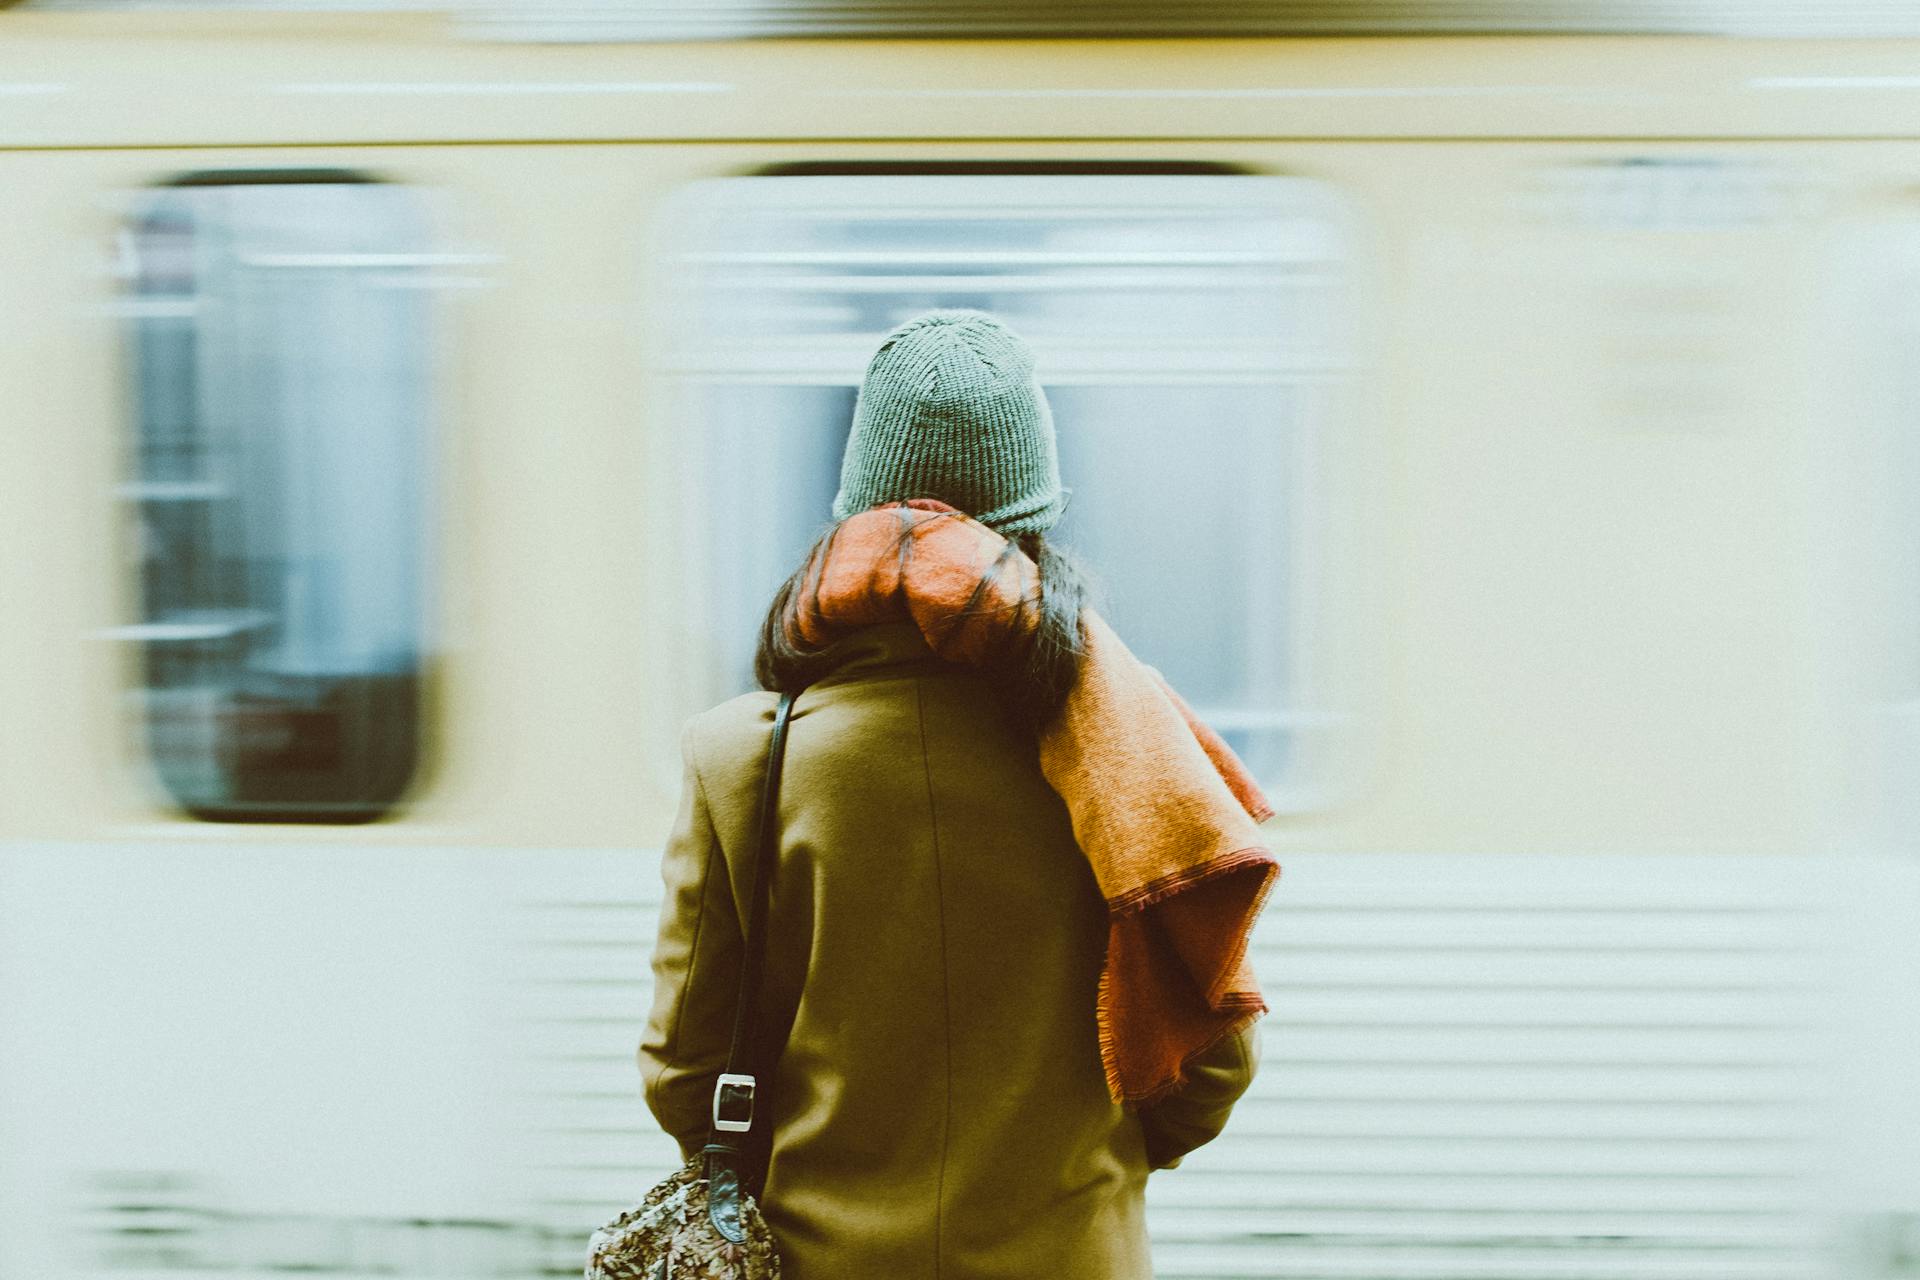 Une photo en accéléré d'une personne se tenant près d'un train | Source : Pexels